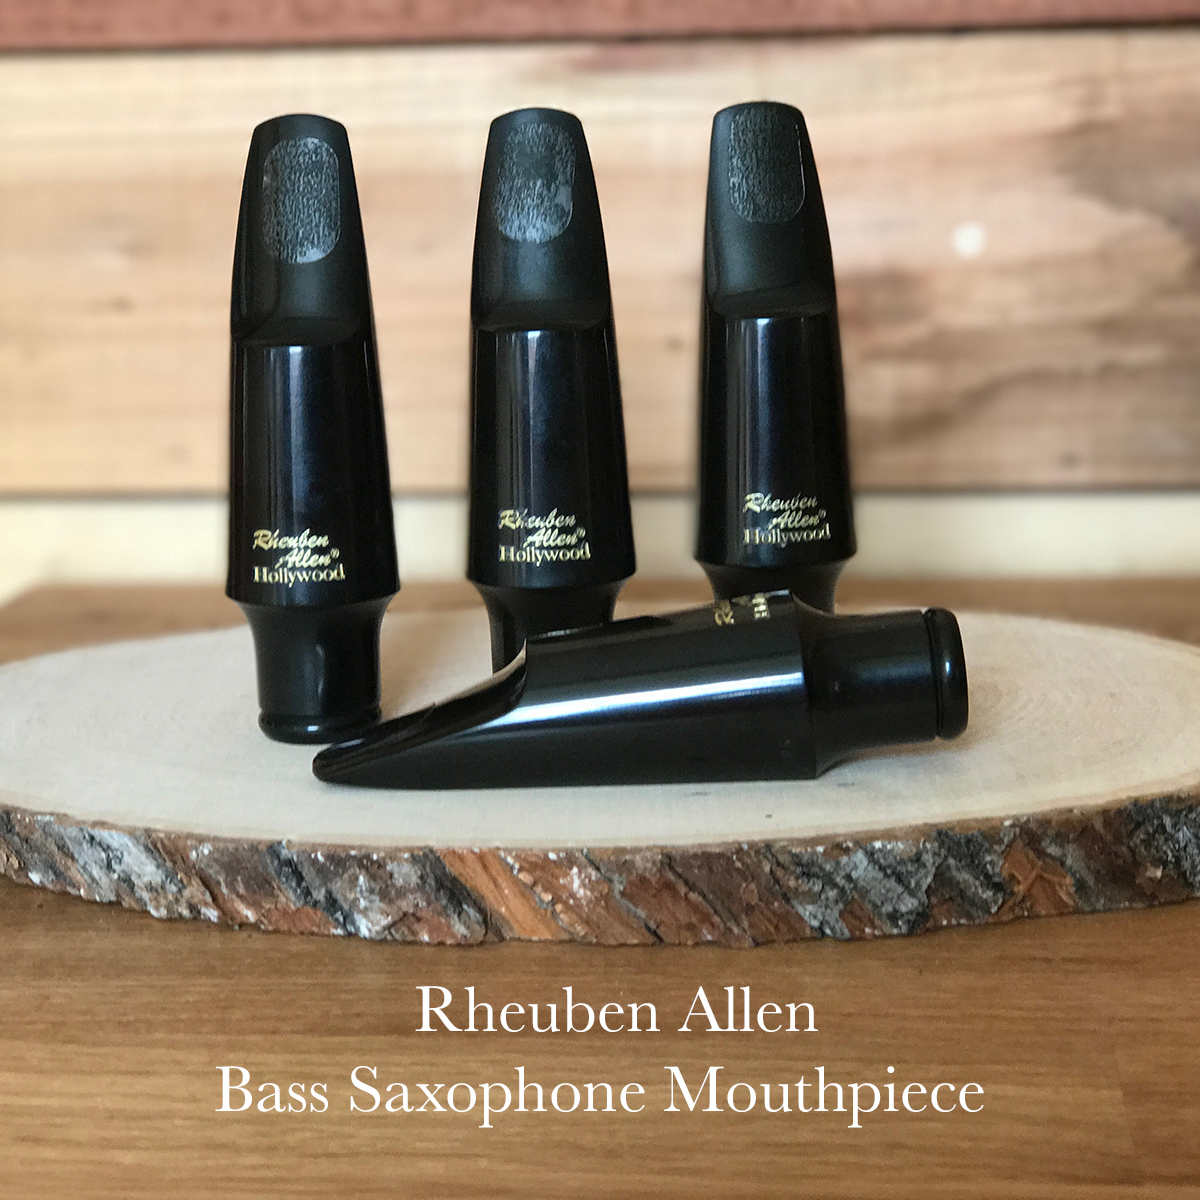 Bass Sax Mouthpiece by Rheuben Allen Hard Rubber Bass Saxophone Mouthpiece